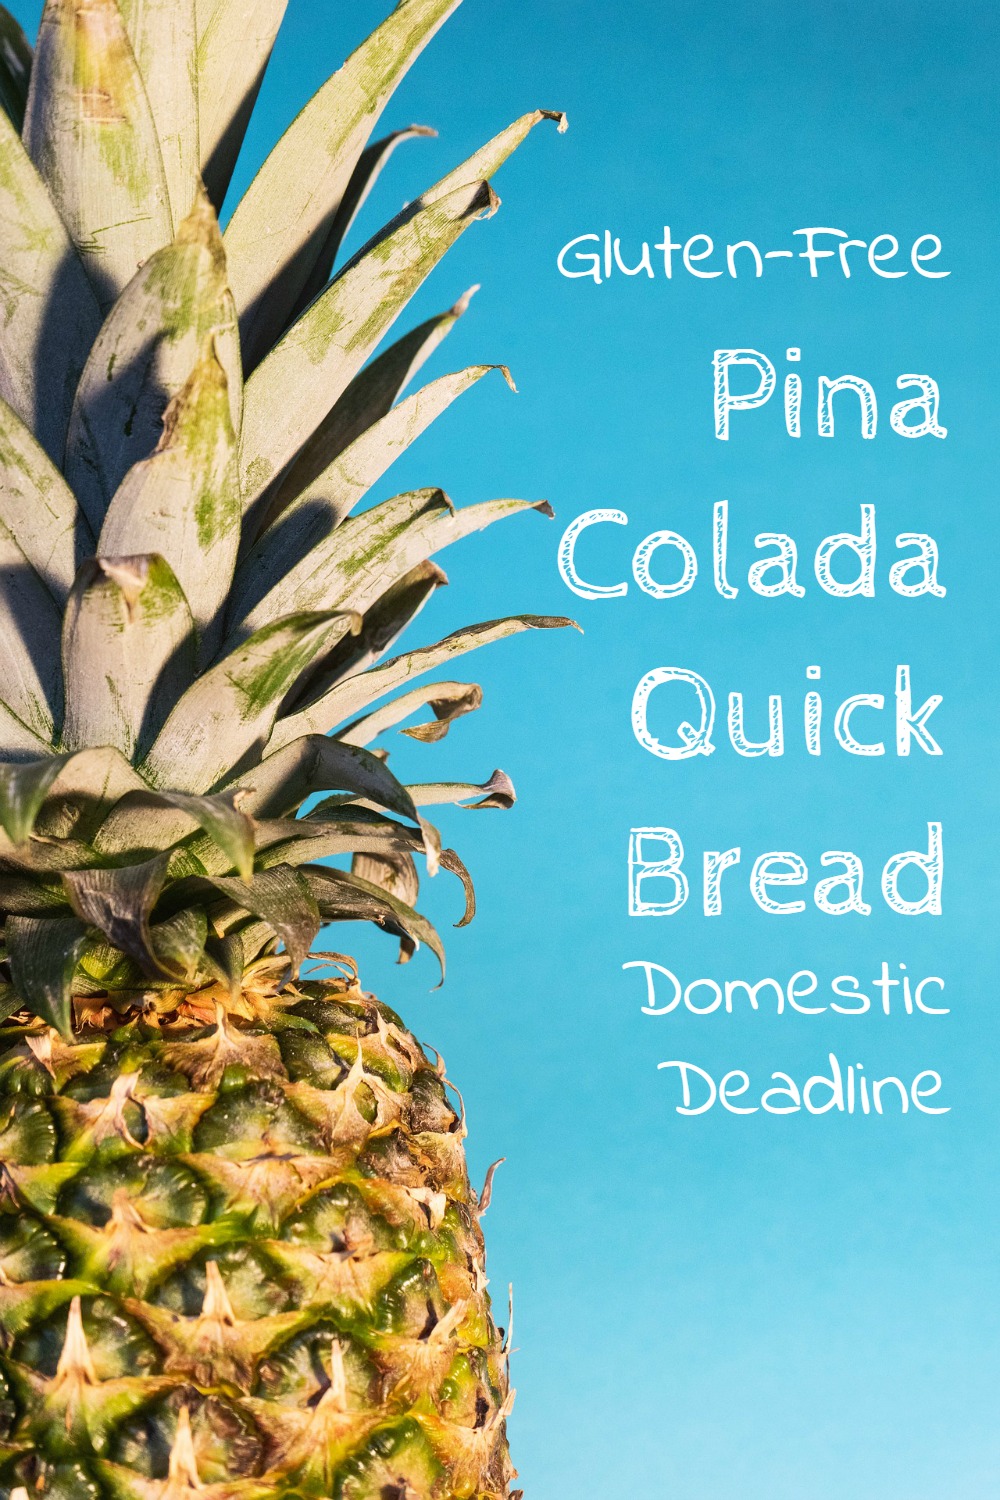 Gluten-Free Pina Colada Quick Bread - Domestic Deadline